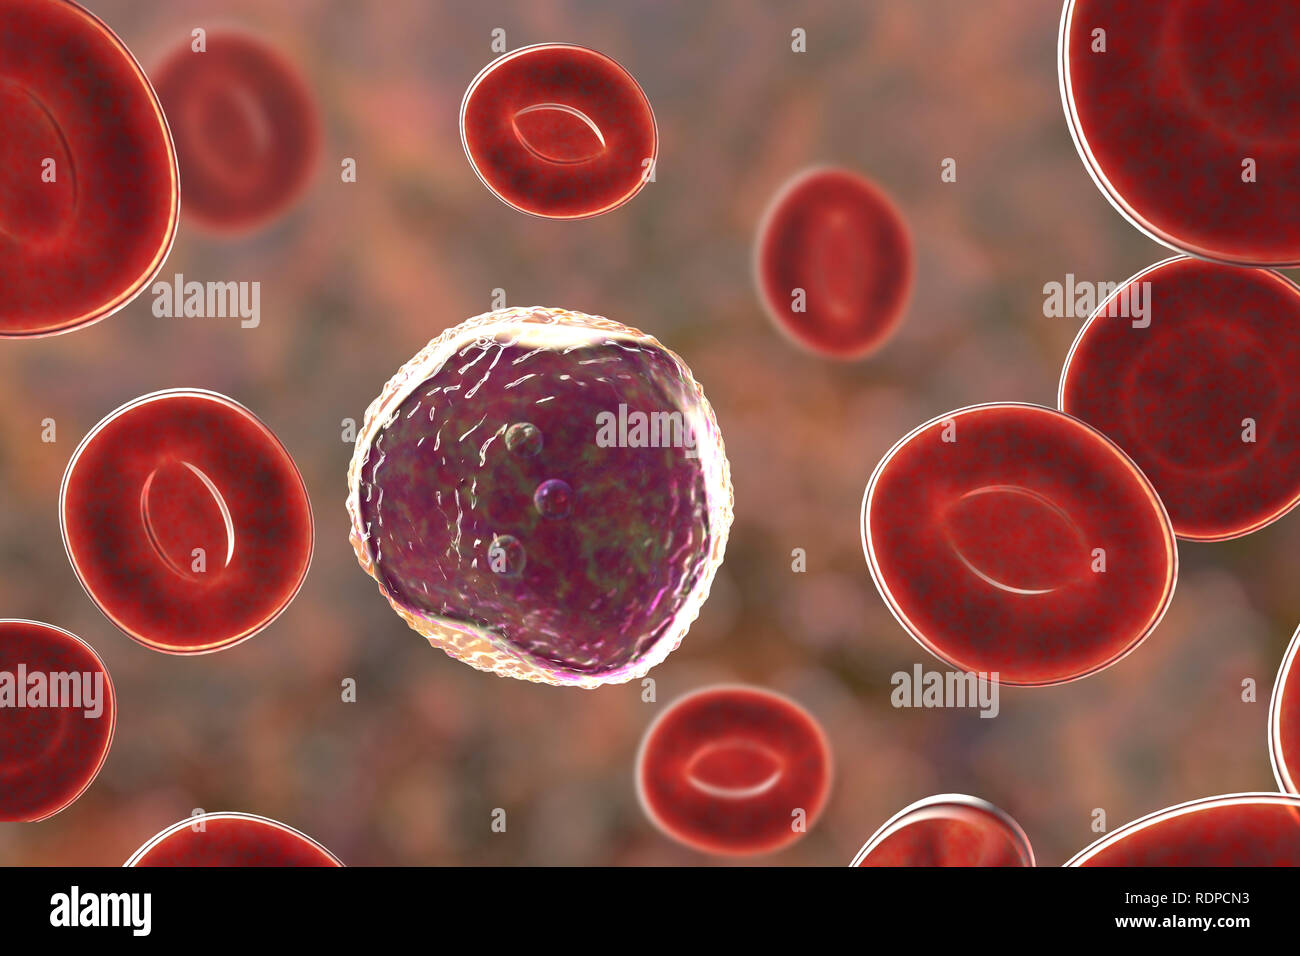 Les cellules de sang blanches des lymphocytes dans un frottis sanguin, illustration de l'ordinateur. Les lymphocytes sont impliqués dans la production d'anticorps et infectés par un virus attaque et les cellules tumorales. Banque D'Images